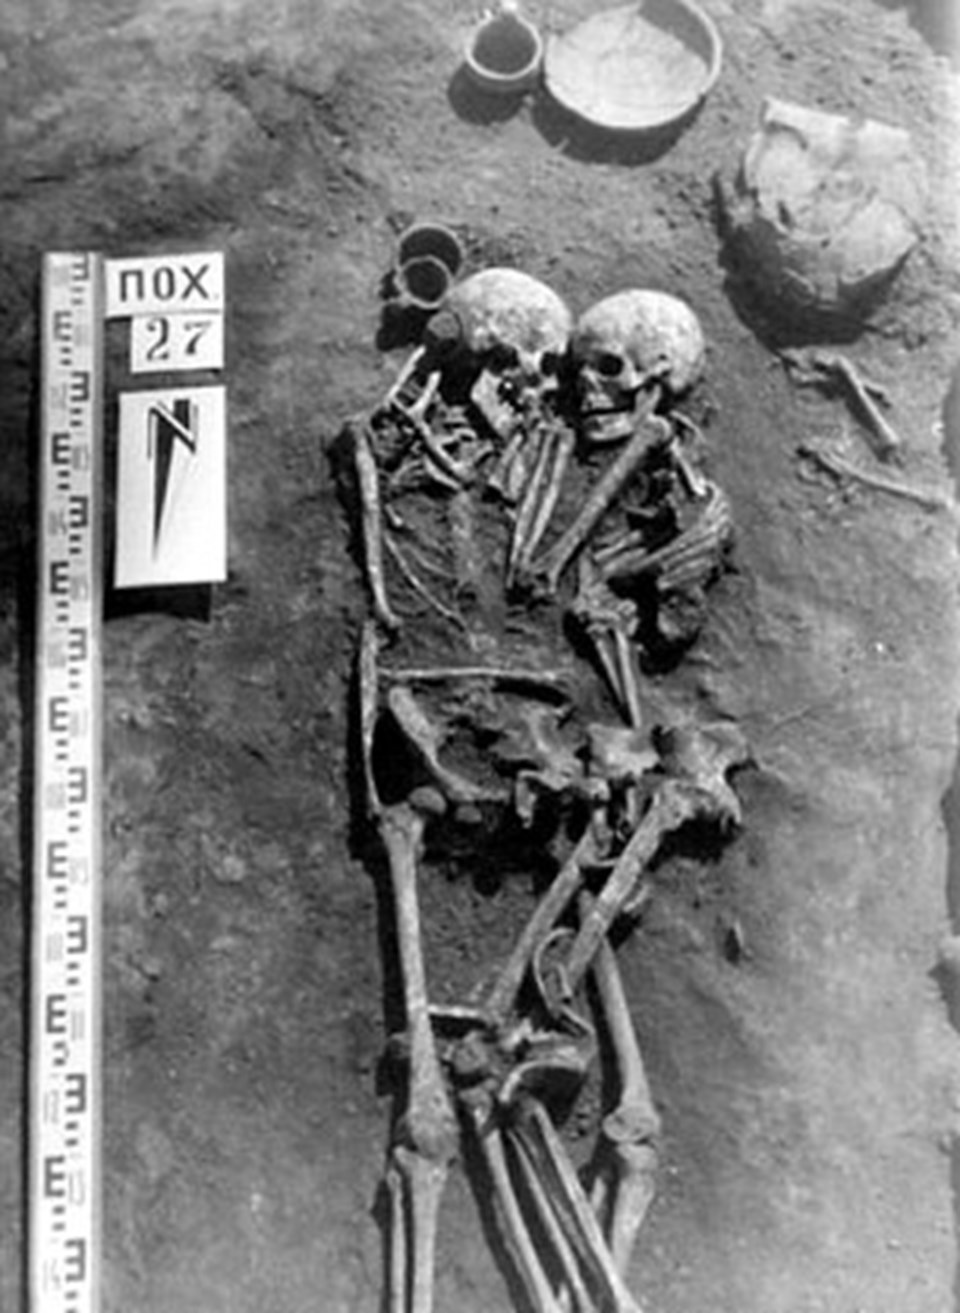 3 bin yıllık mezarın sırrı çözüldü: Ölümsüz aşk - 1